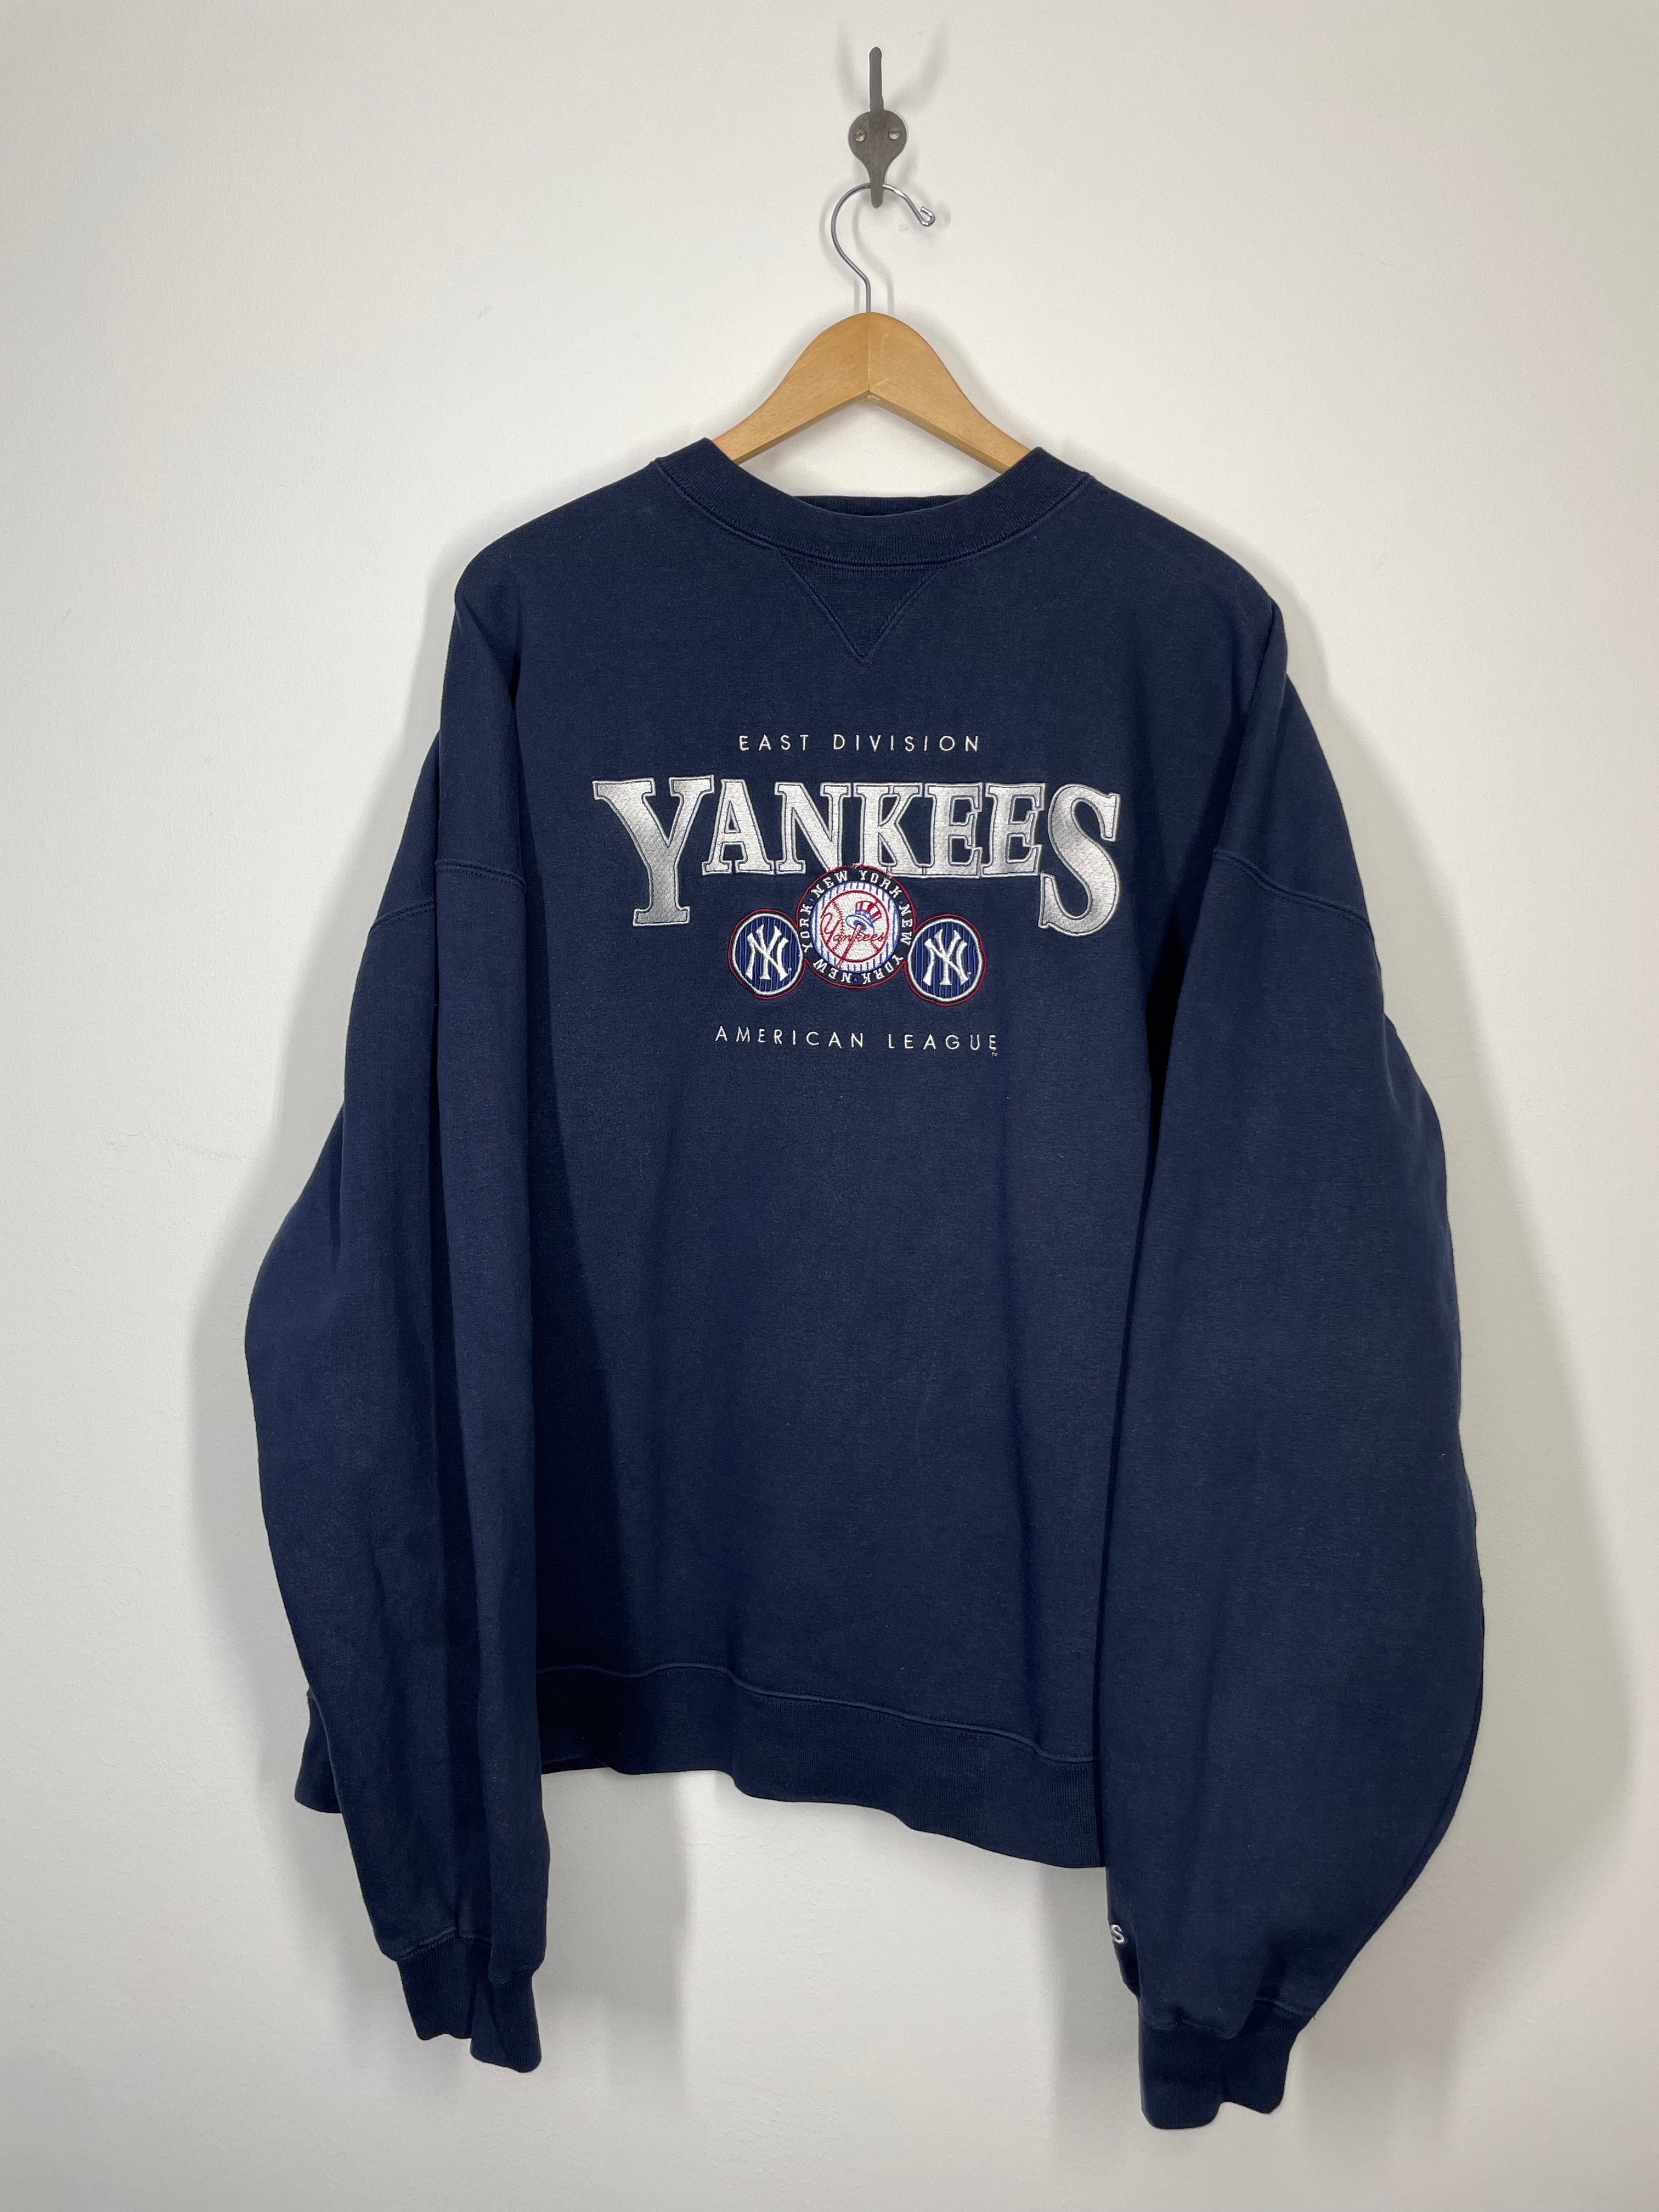 Lee, Shirts, Vintage Ny Yankees T Shirt